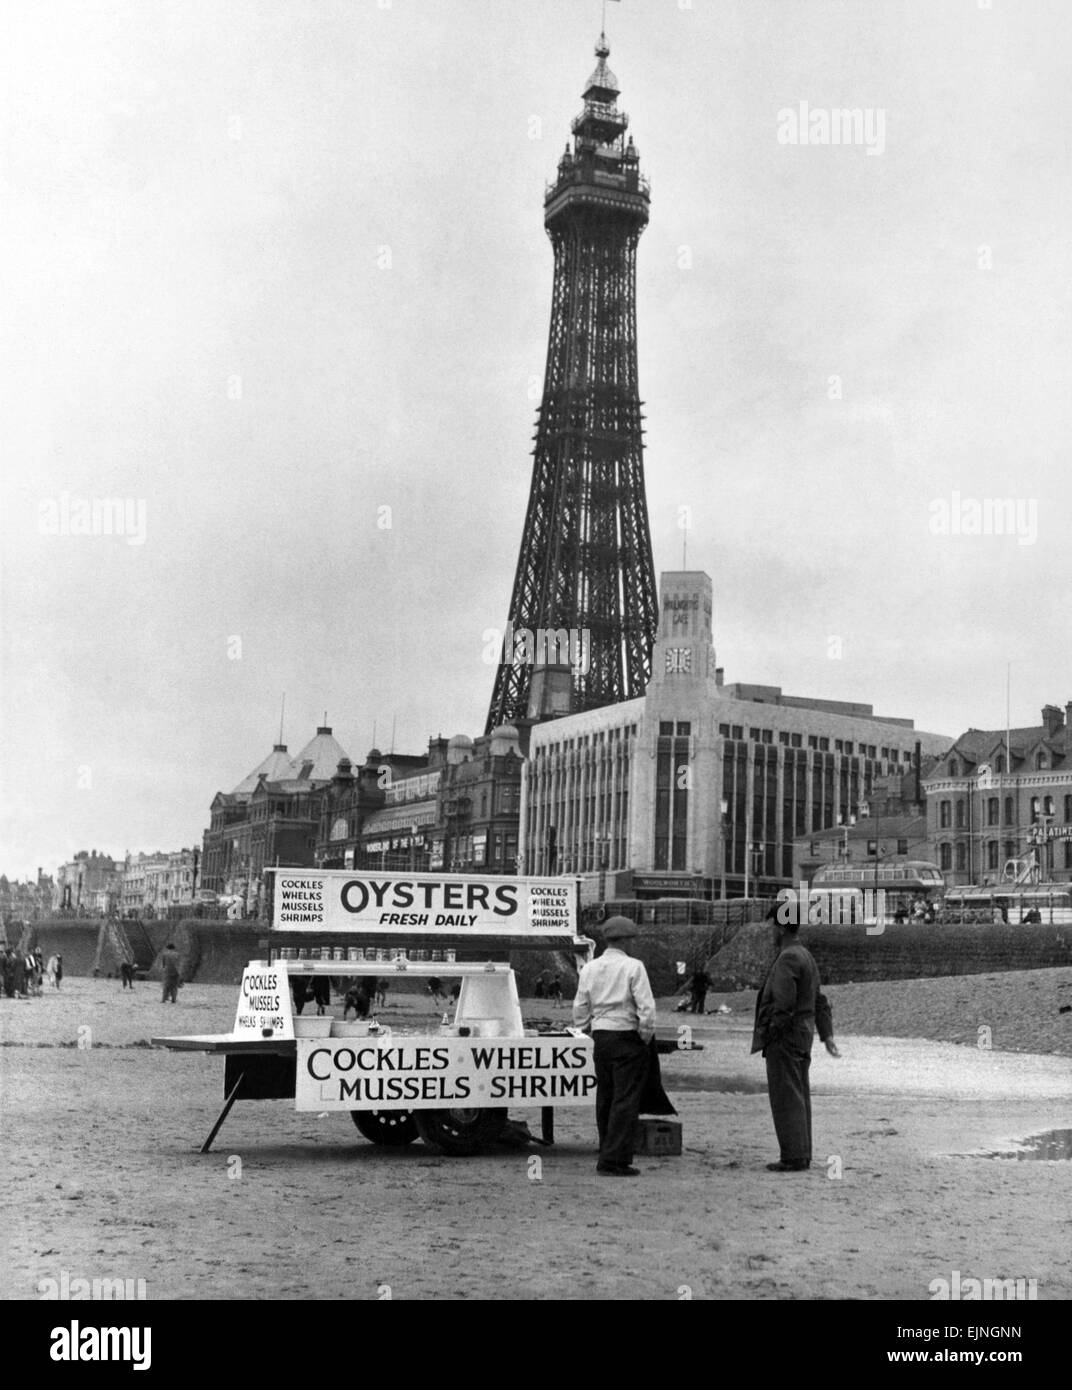 Une huître vente de décrochage des crustacés sur la plage en face de la célèbre Tour de Blackpool. Vers 1960 Banque D'Images